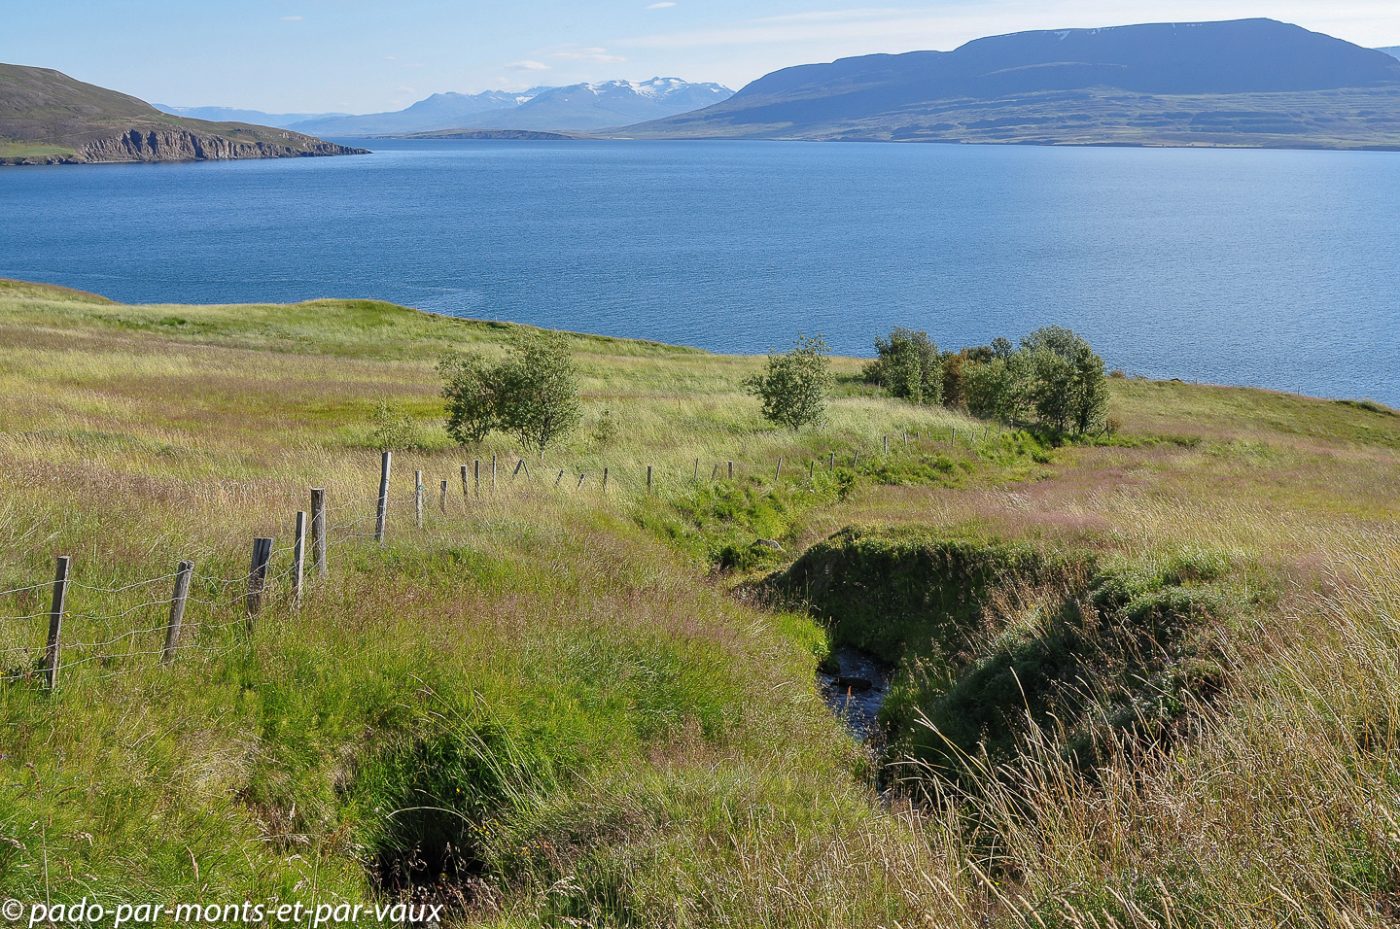  Fjord d'Akureyri